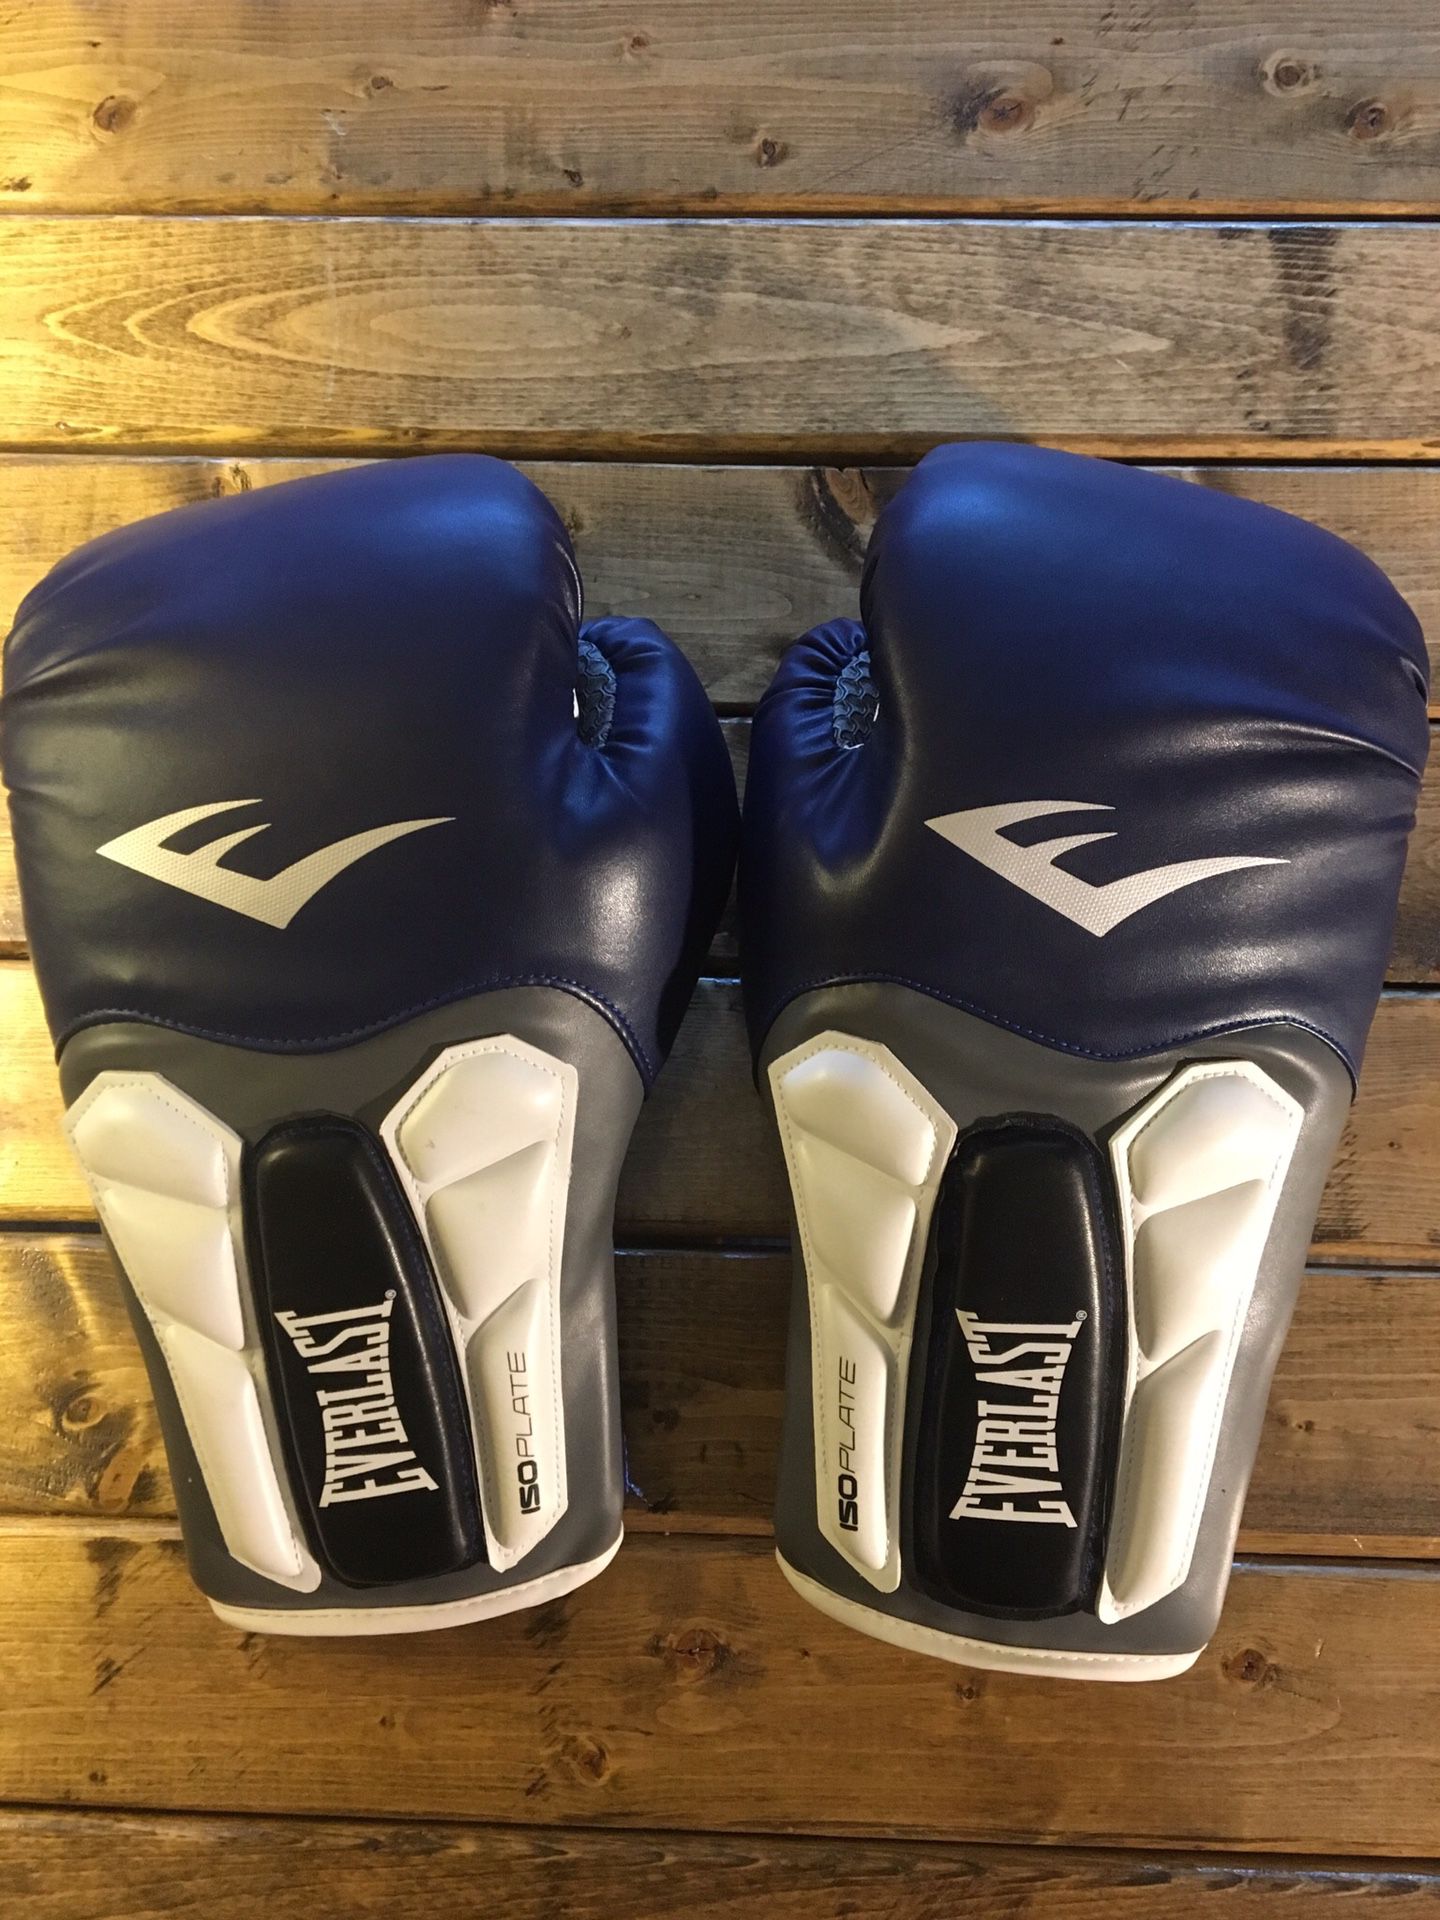 Everlast Prime Brand New Boxing Gloves!